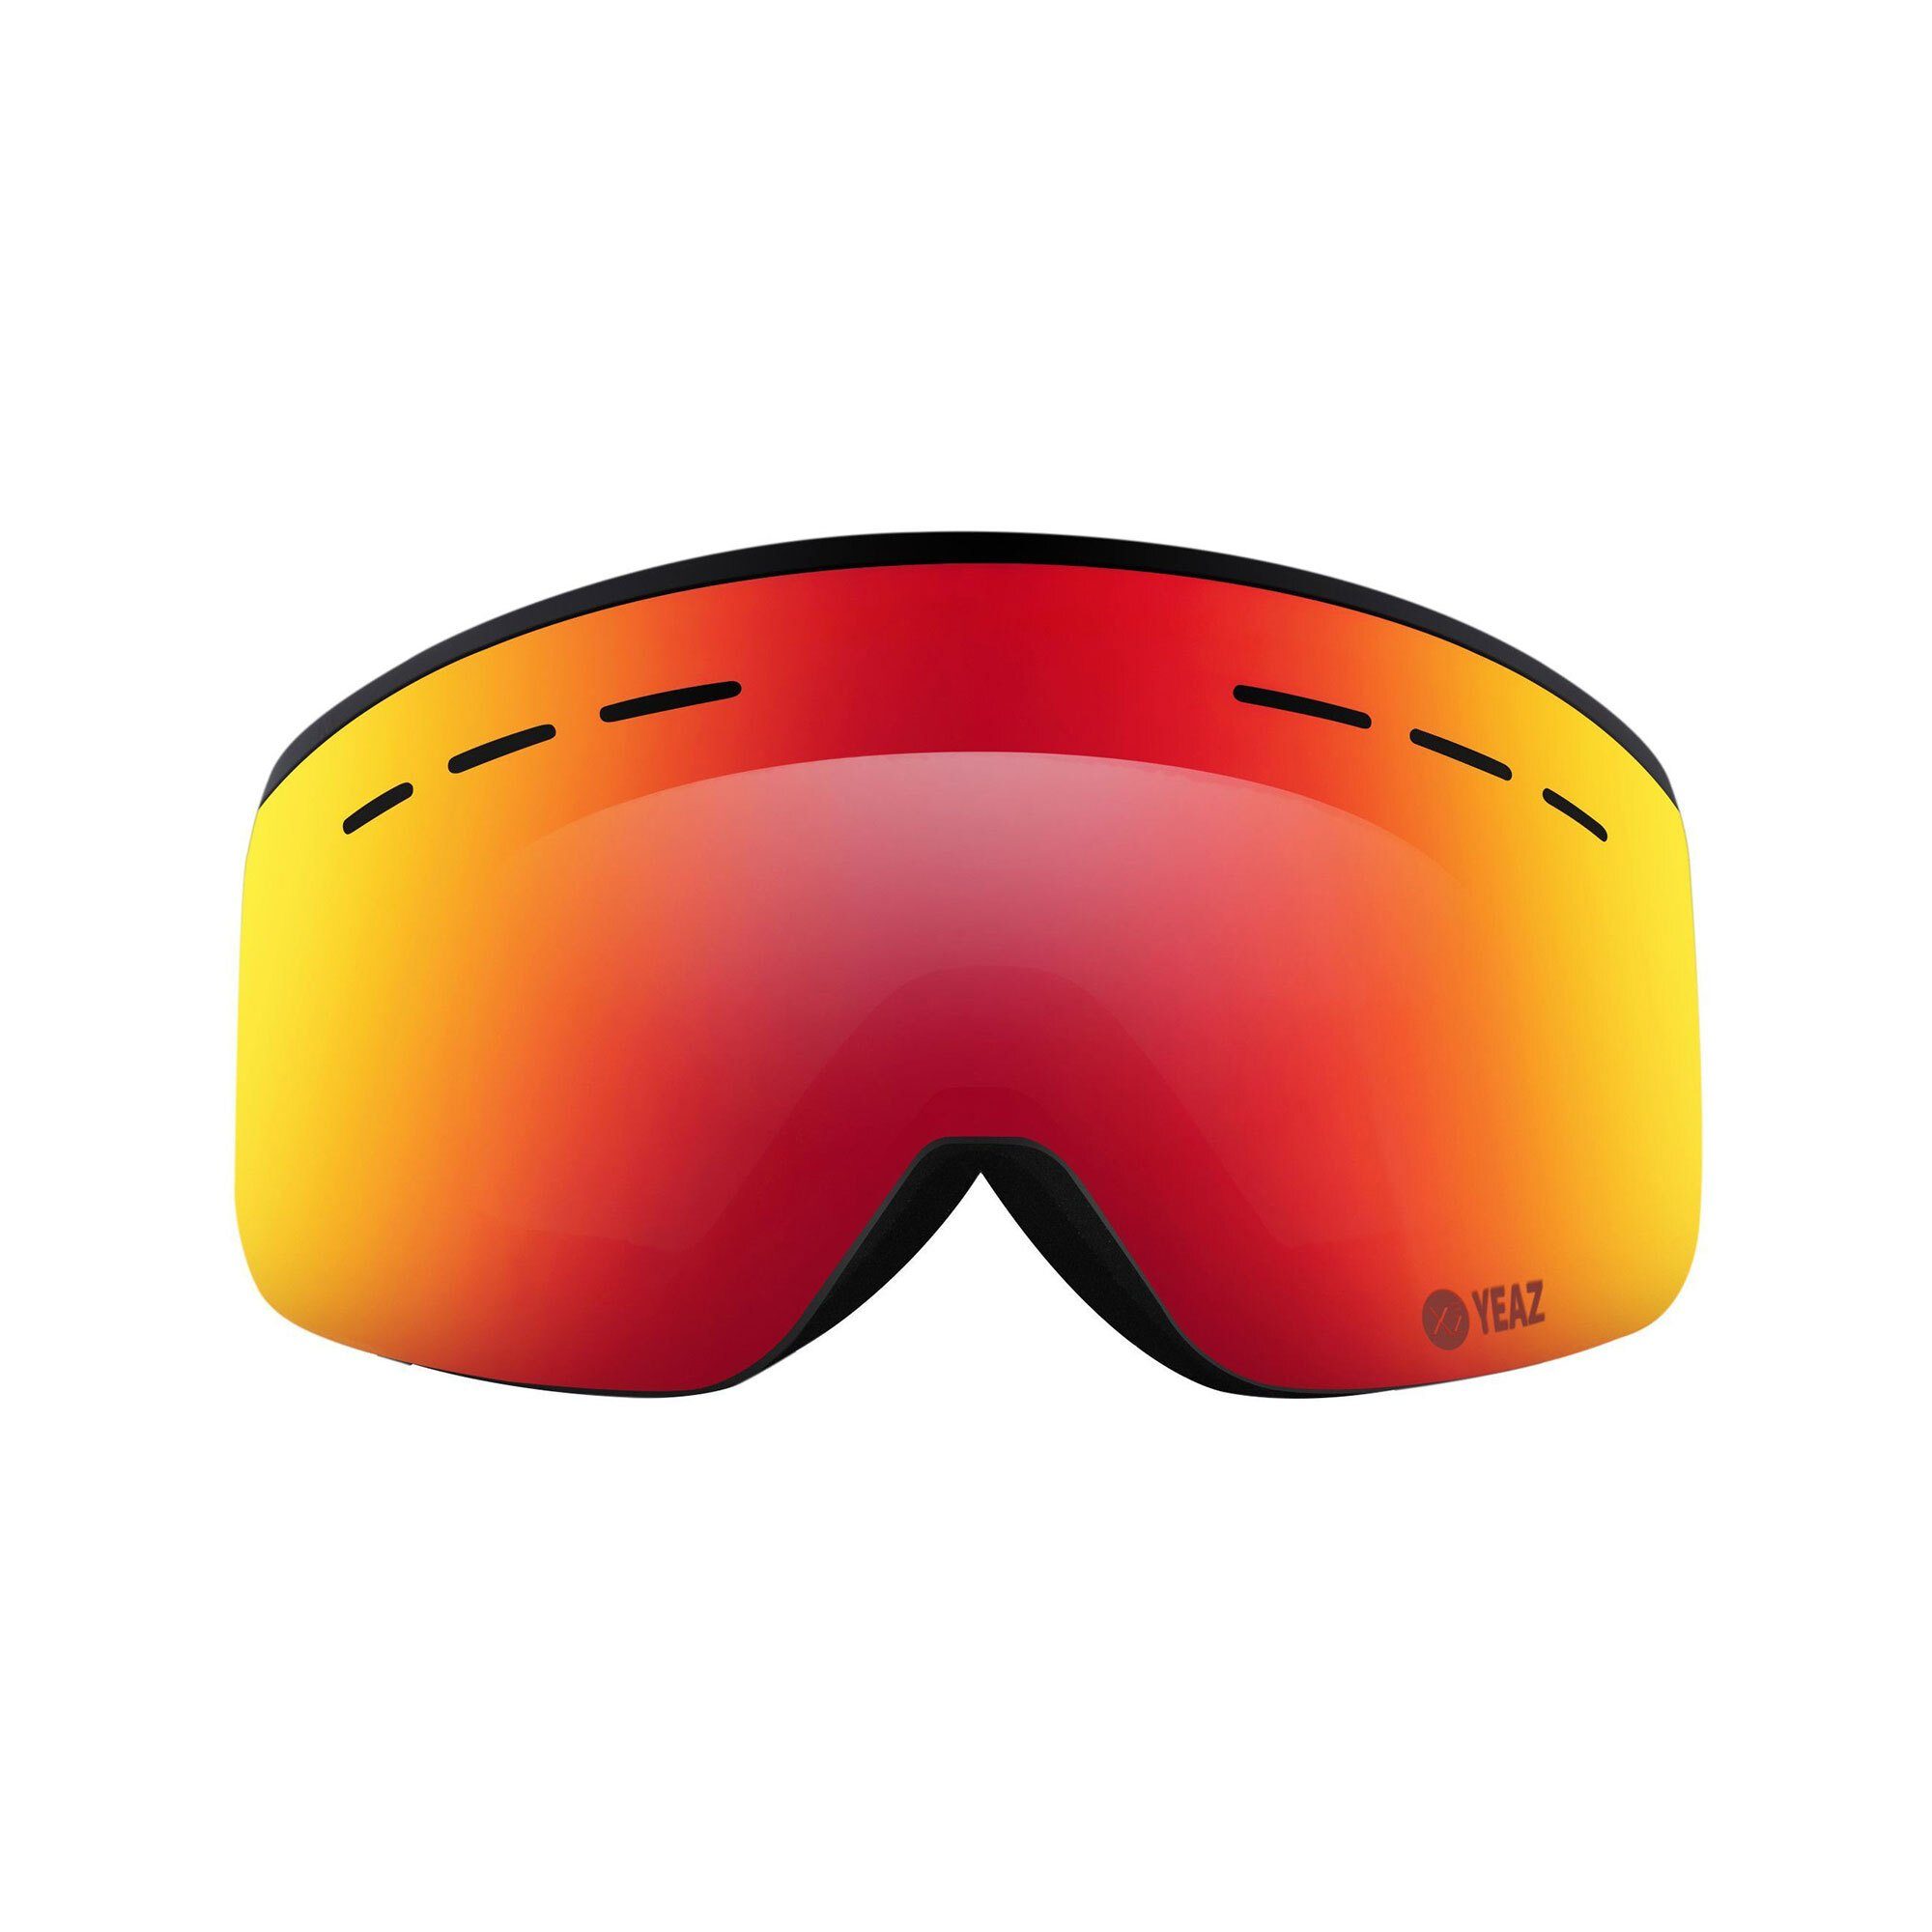 YEAZ Skibrille RISE ski- snowboardbrille schwarz, Premium-Ski- und  Snowboardbrille für Erwachsene und Jugendliche | Brillen